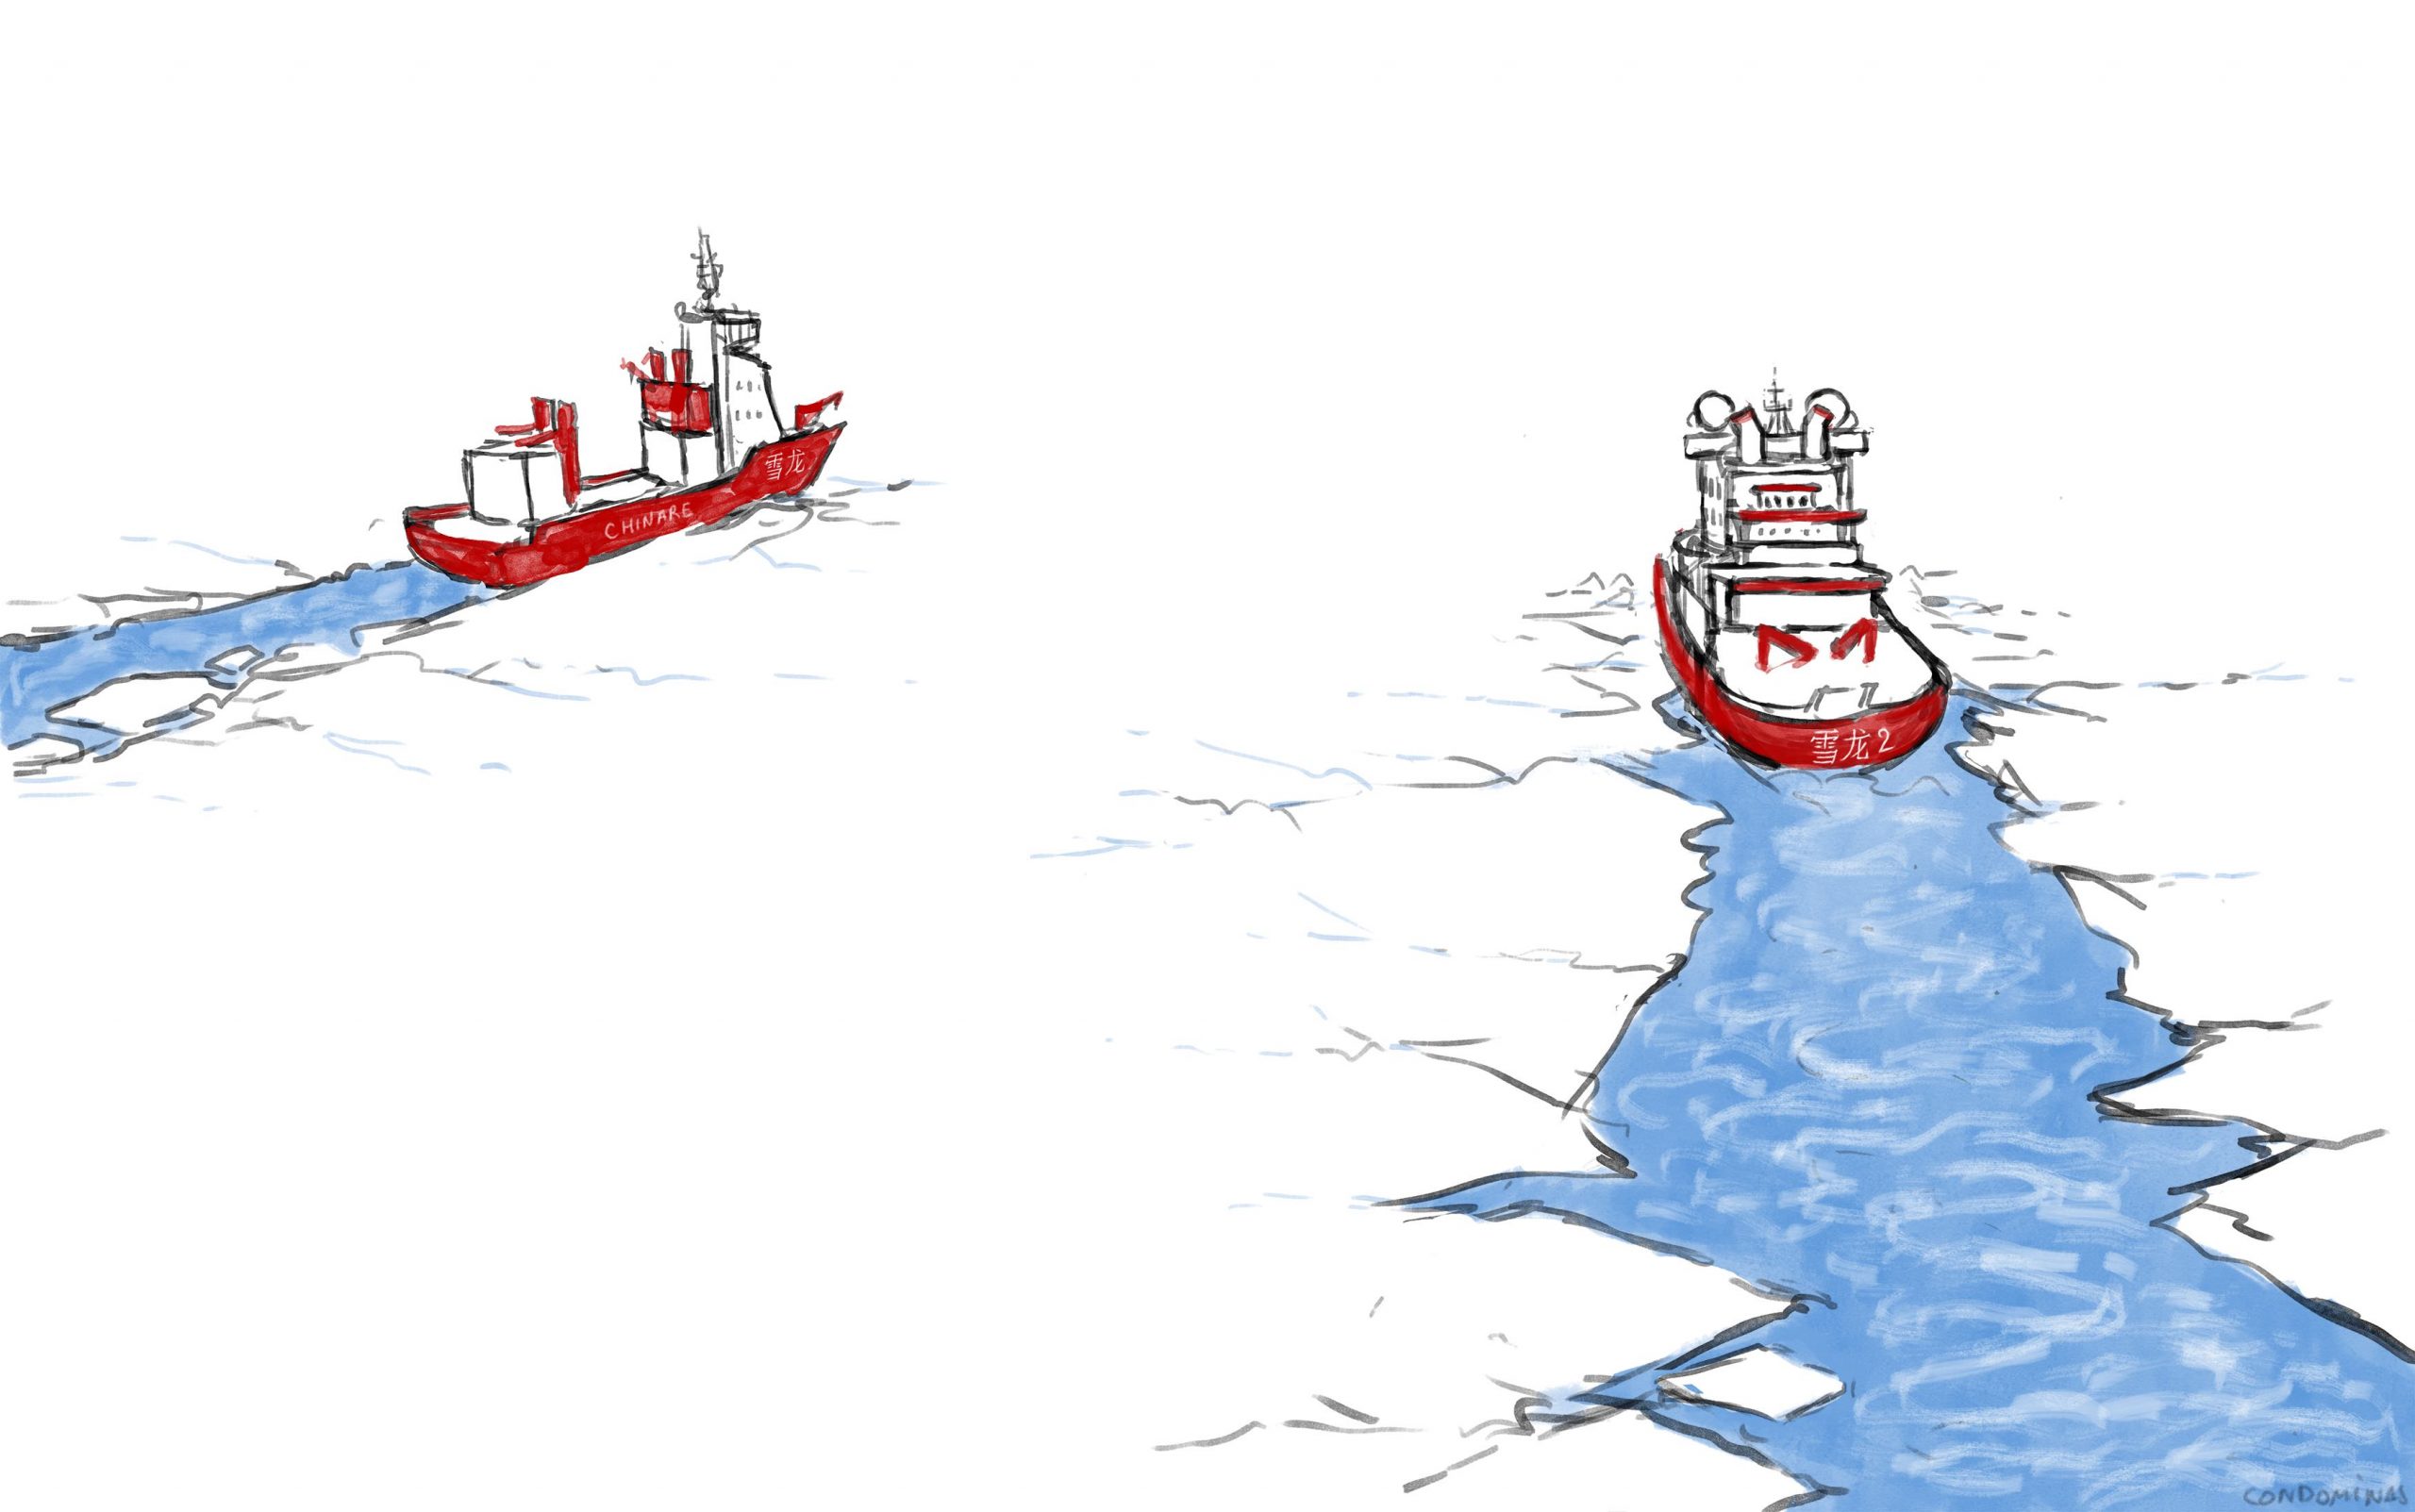 Les deux brises-glaces de la Chine dans le cercle arctique : le Xuelong (Dragon des neiges) et le Xuelong 2. Dessin : Baptiste Condominas. (Copyright : Baptiste Condominas pour Asialyst)